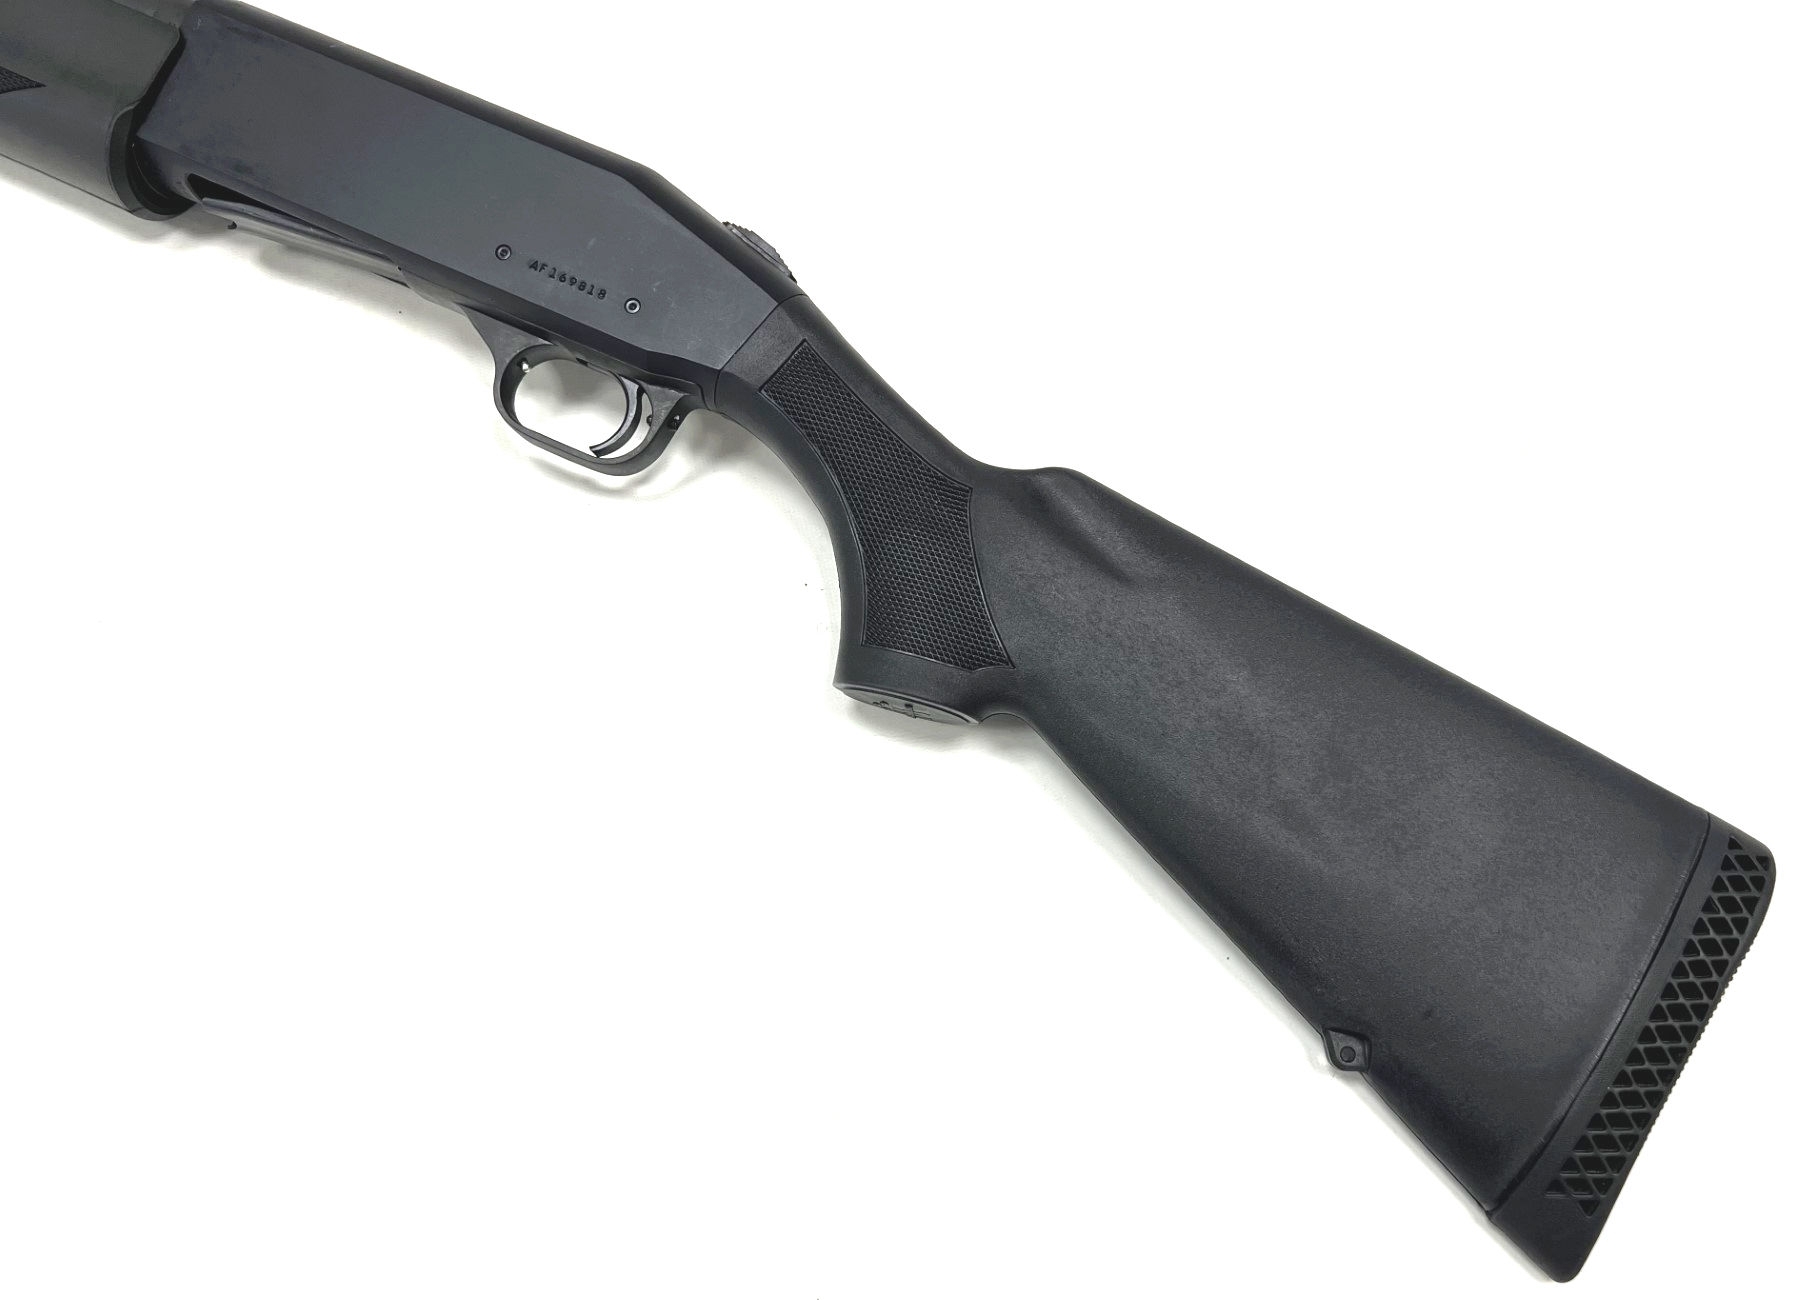 mossberg 930 jm pro firearm specification shotgun